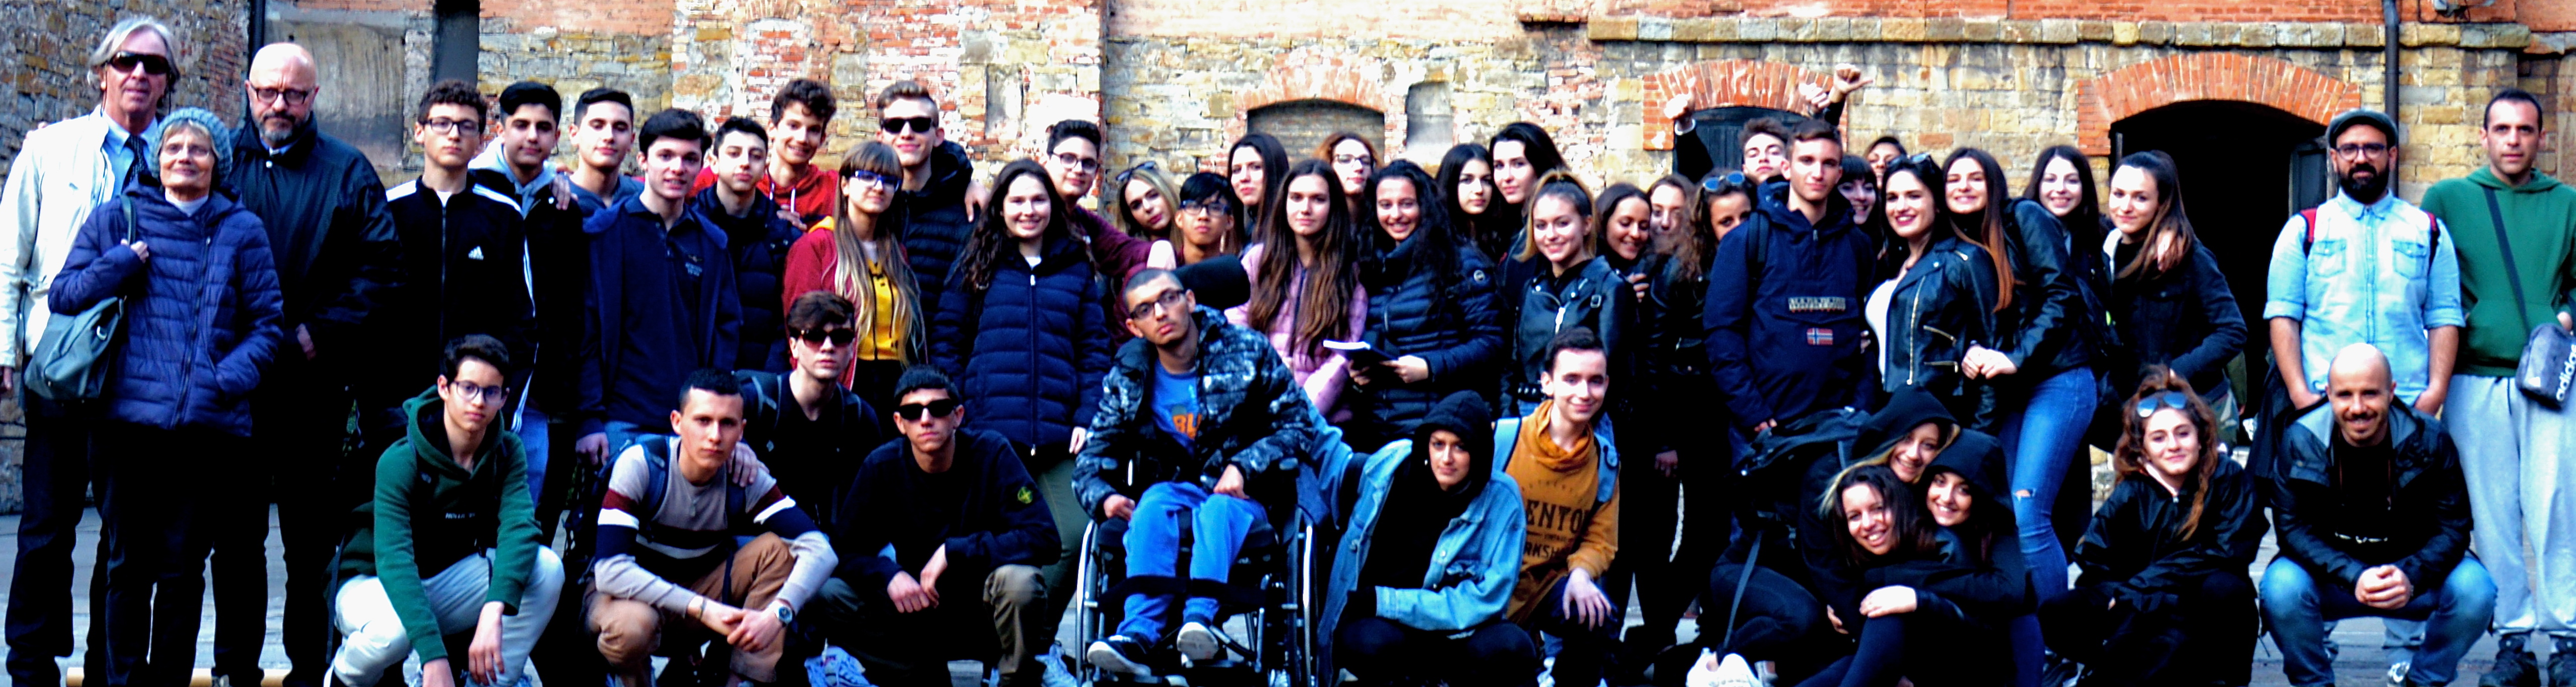 Liceo G. B. Vico di Milano (Corsico) ieri al gemellaggio informale con il Liceo Petrarca di Trieste alla Risiera di San Sabba-